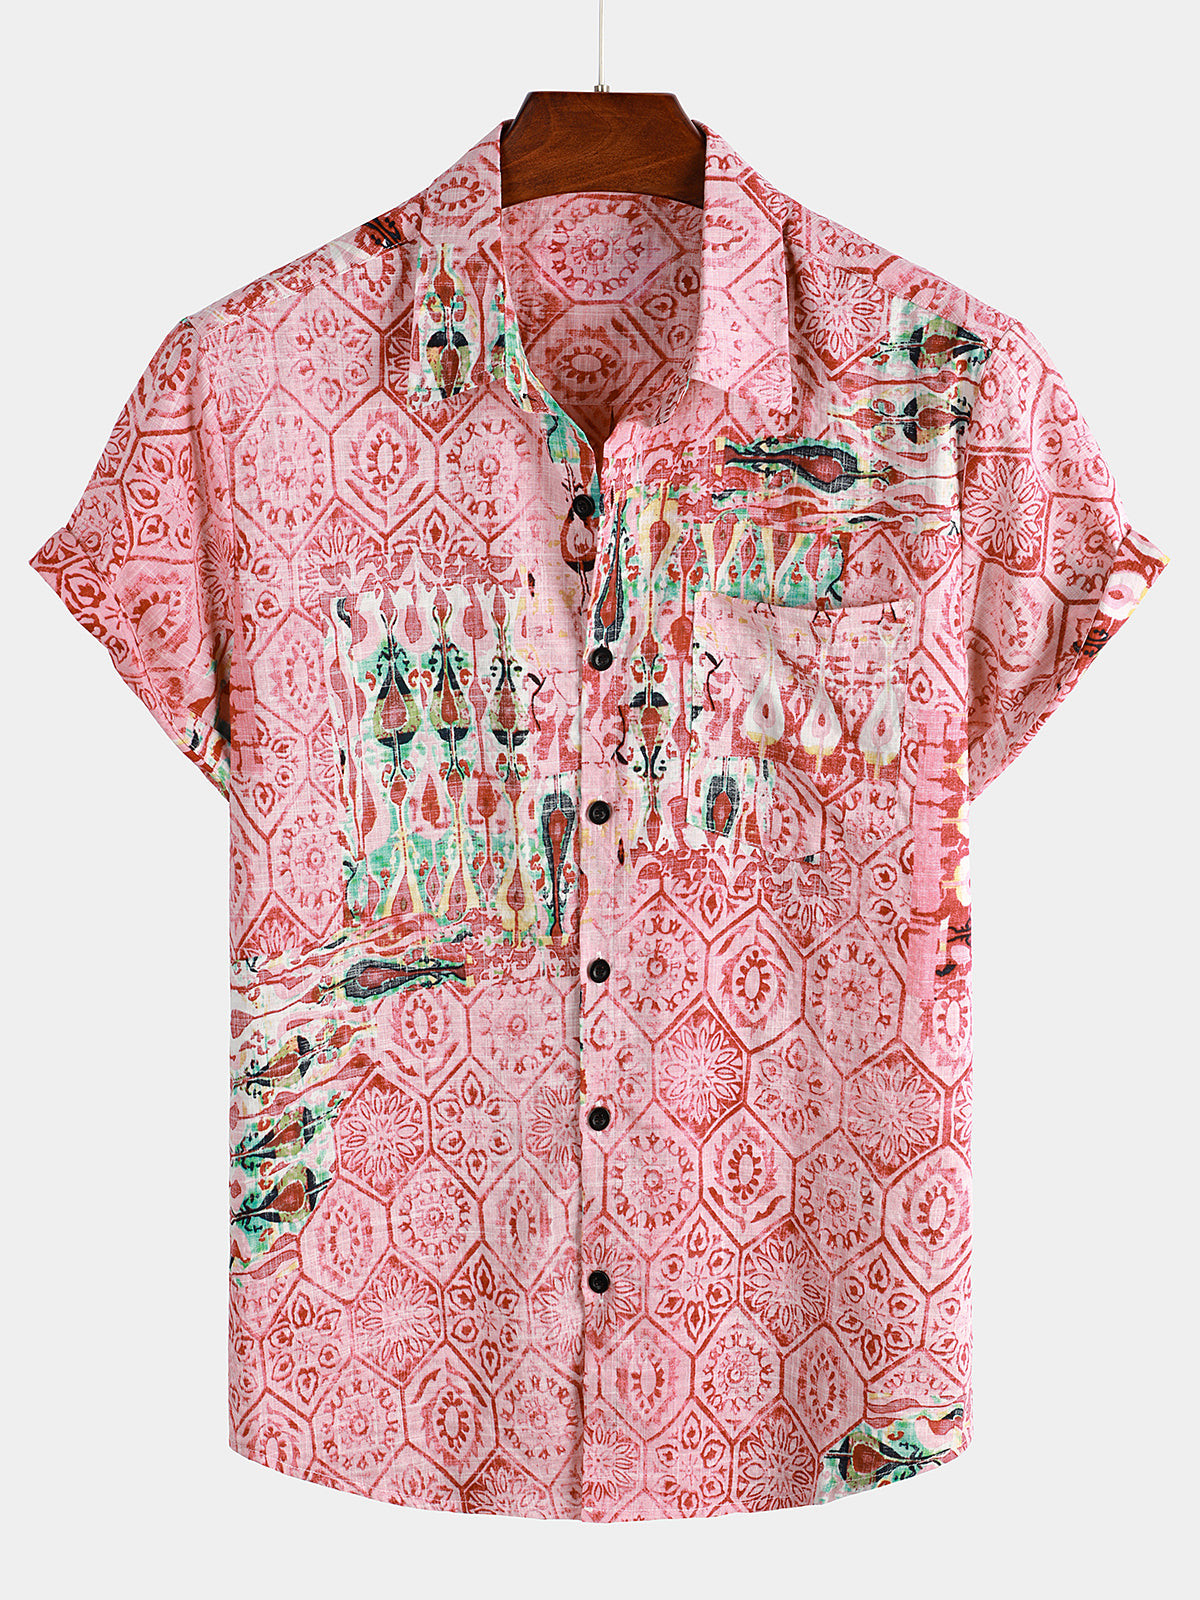 Mens Casual Holiday Pocket Holiday Shirt Hawaiian Shirt for Men Women